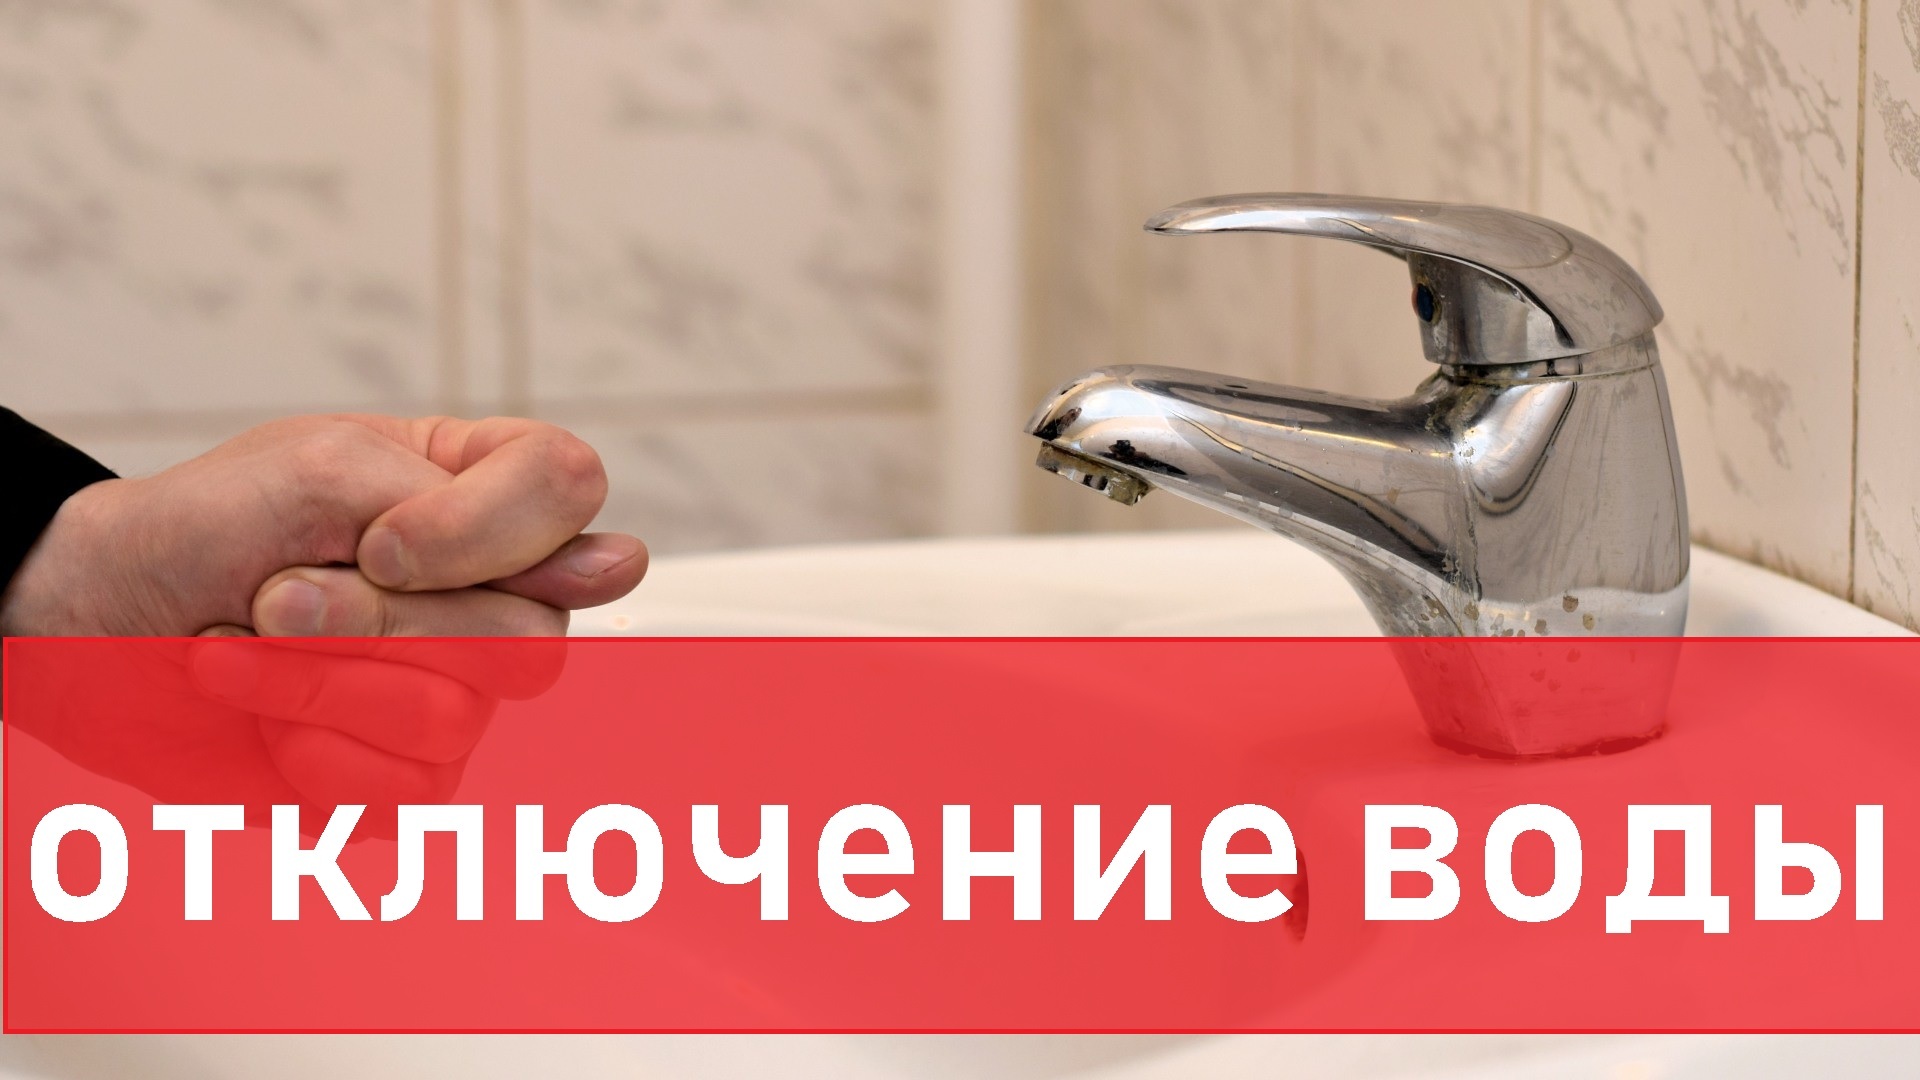 Запасайтесь водой: жителей Владивостока предупреждают об отключениях — адреса